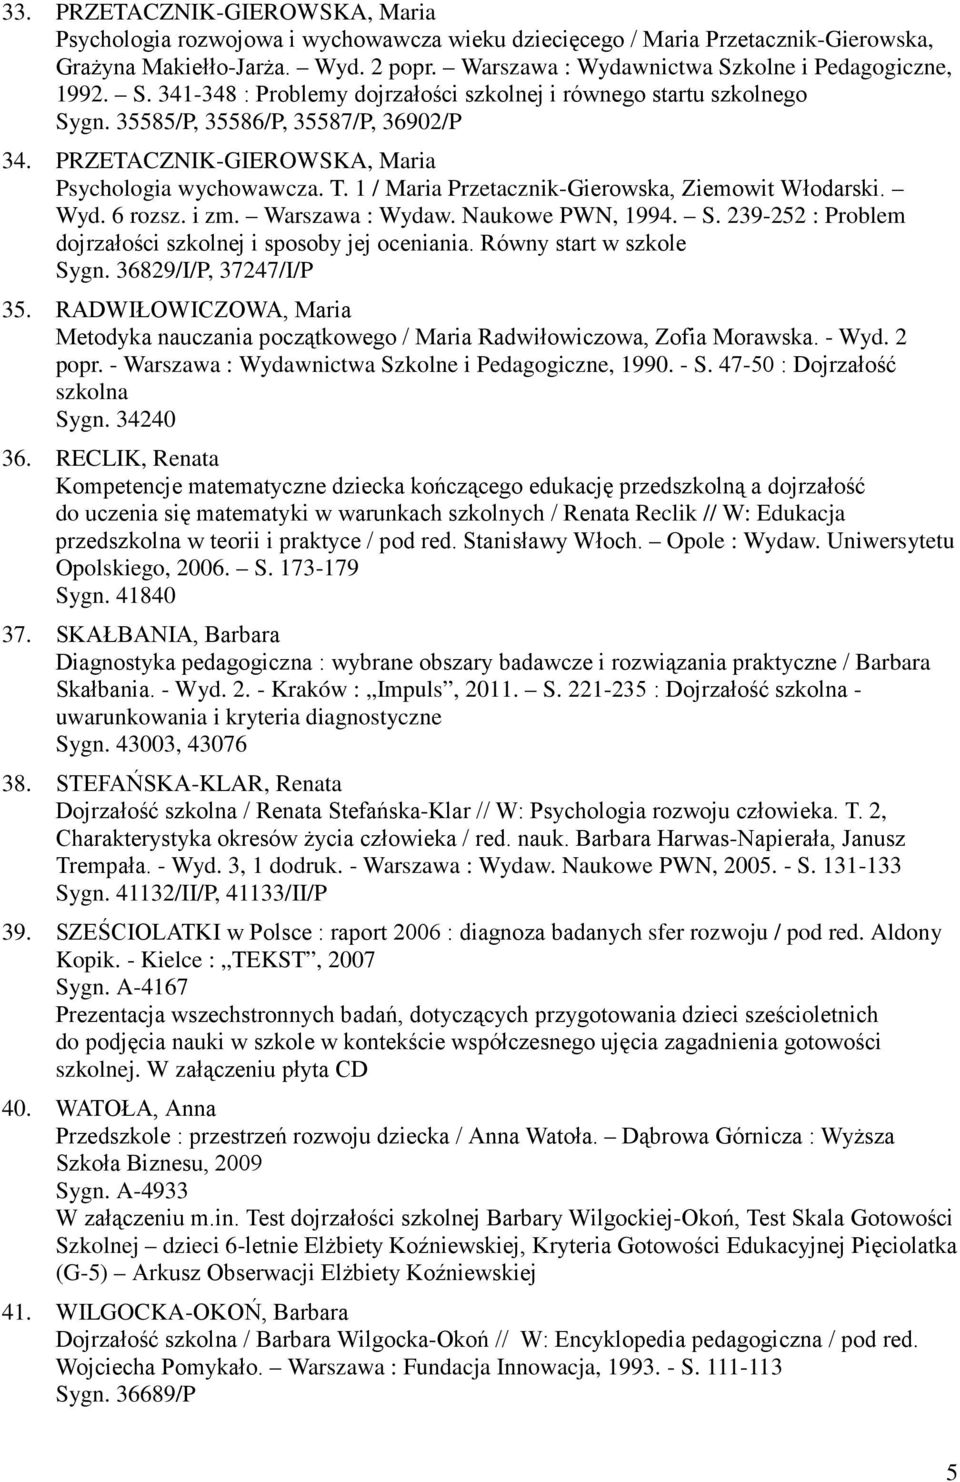 PRZETACZNIK-GIEROWSKA, Maria Psychologia wychowawcza. T. 1 / Maria Przetacznik-Gierowska, Ziemowit Włodarski. Wyd. 6 rozsz. i zm. Warszawa : Wydaw. Naukowe PWN, 1994. S.